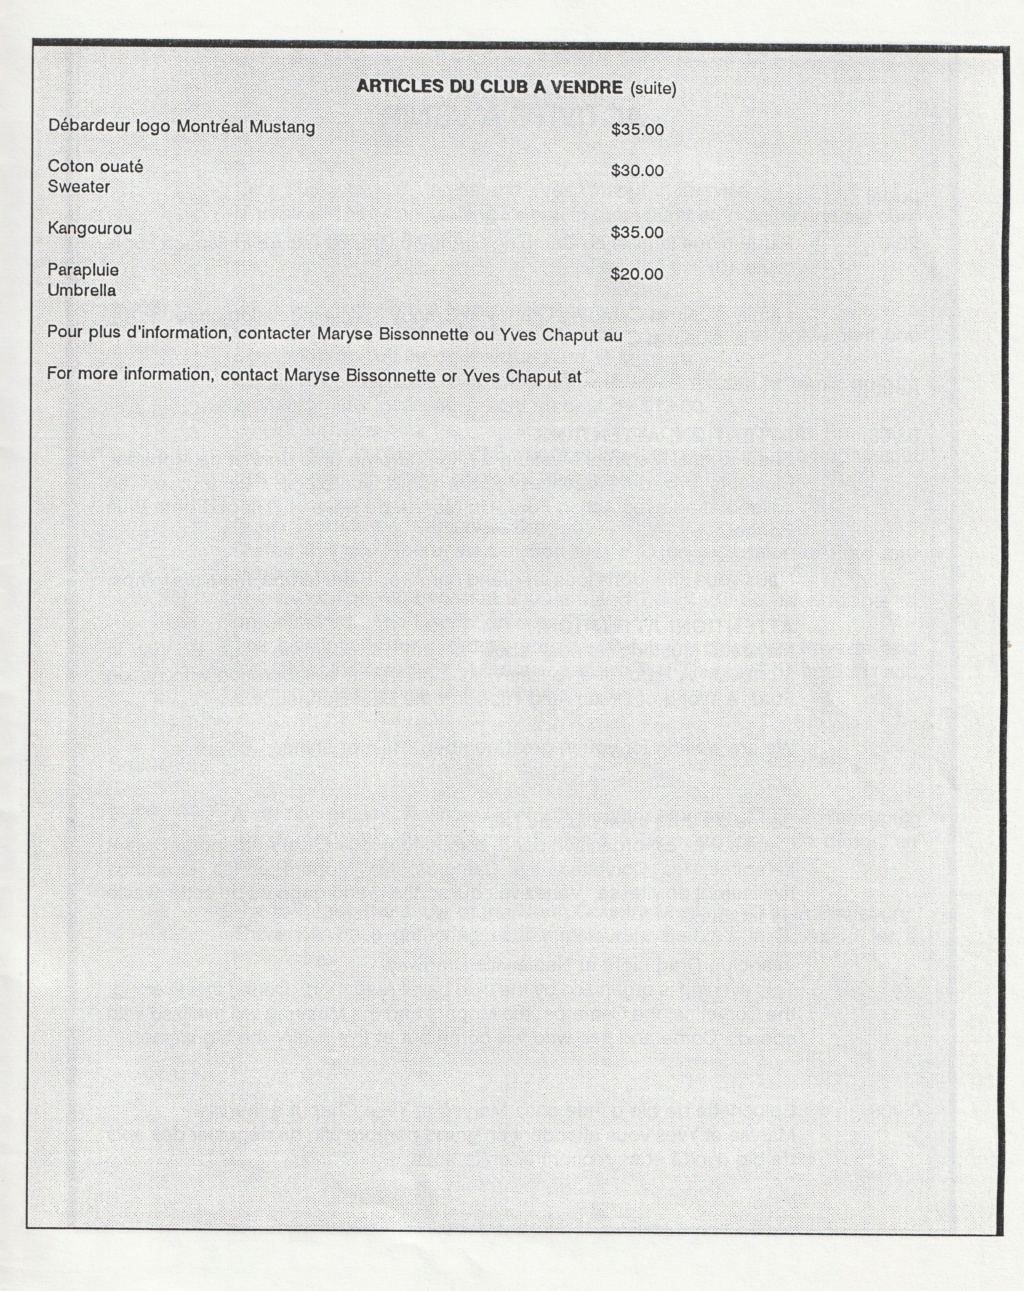 Montréal Mustang dans le temps! 1981 à aujourd'hui (Histoire en photos) - Page 8 Img_2451